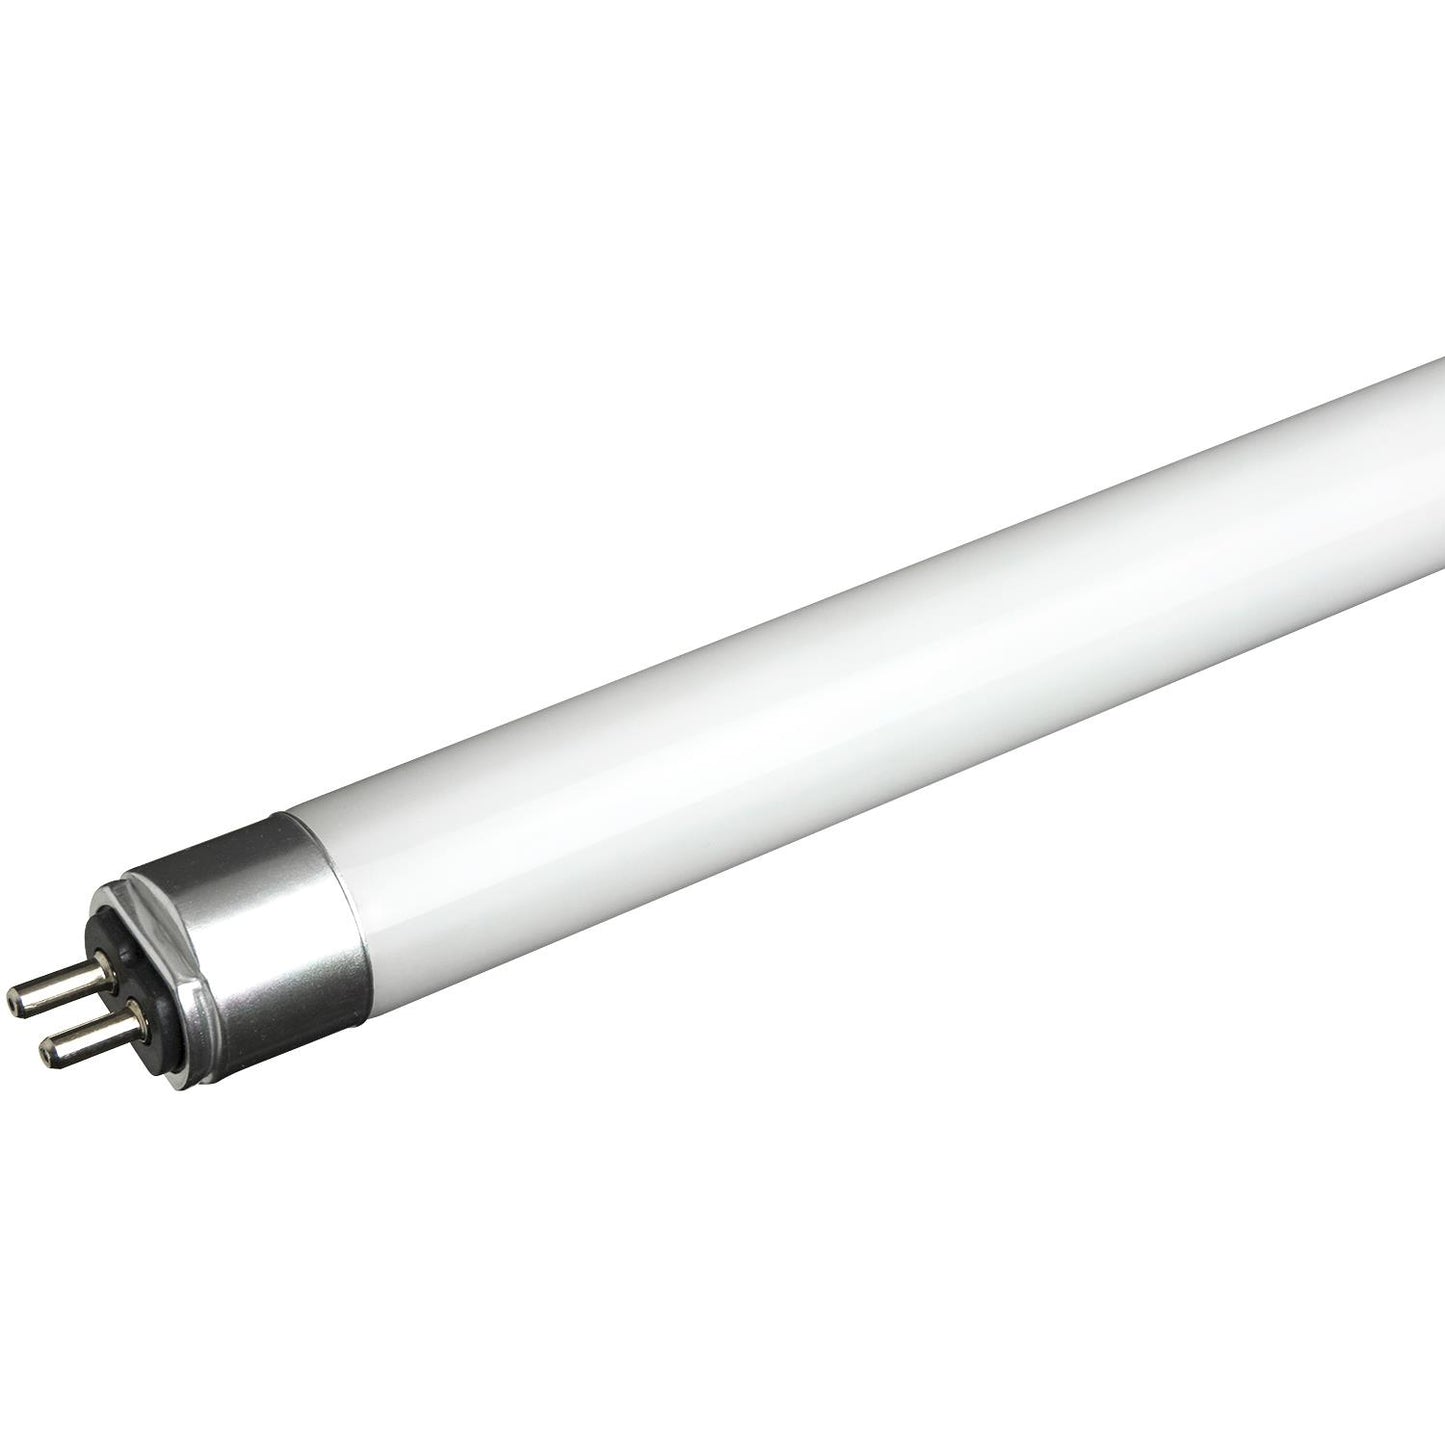 Sunlite T5/LED/2'/11W/IS/50K LED 11W 2 Foot Instant Start T5 Tube Light Fixtures, 5000K Super White Light, Medium Bi-Pin (G13) Base